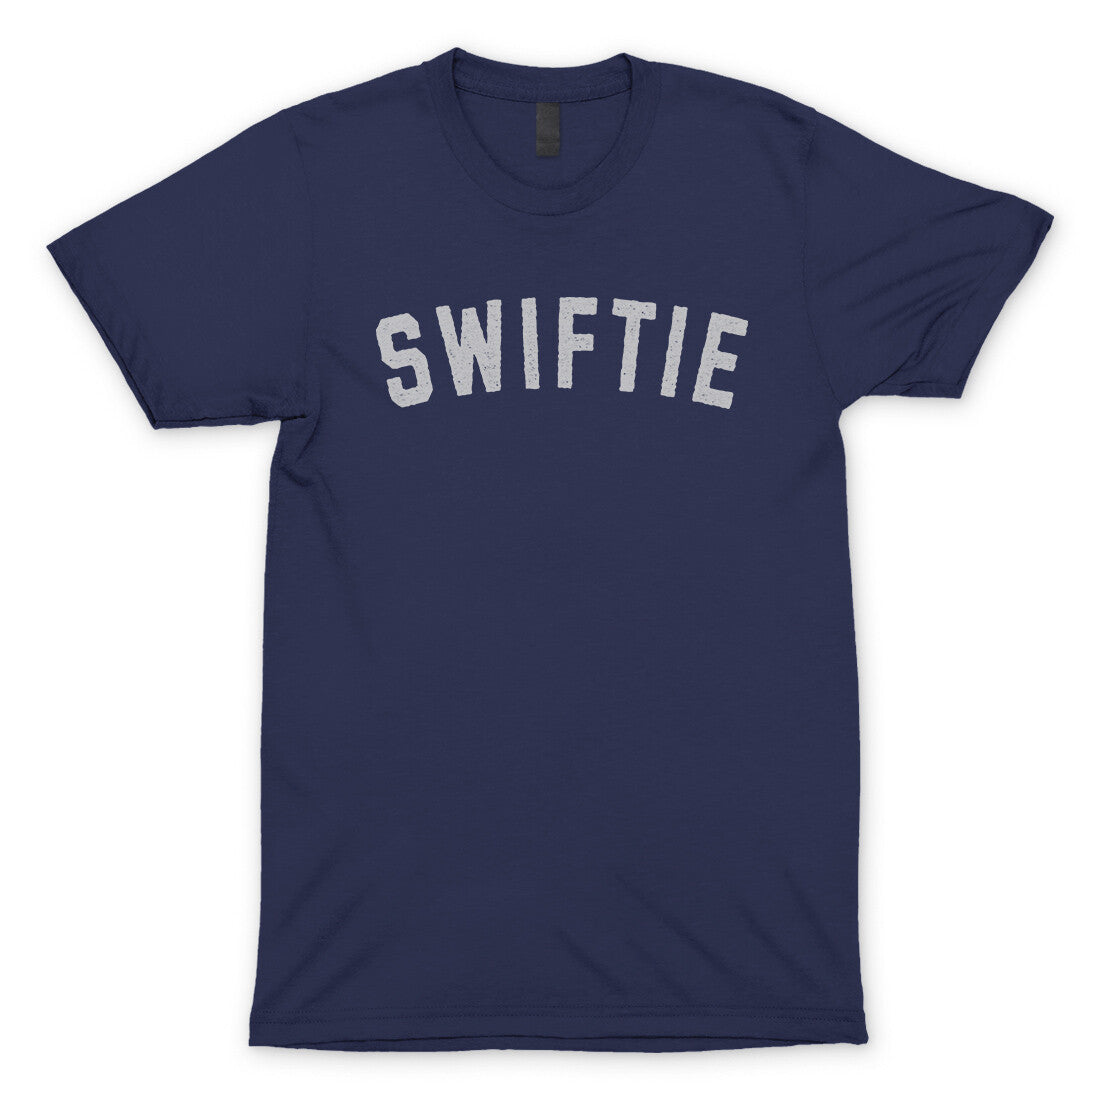 Swiftie in Navy Color